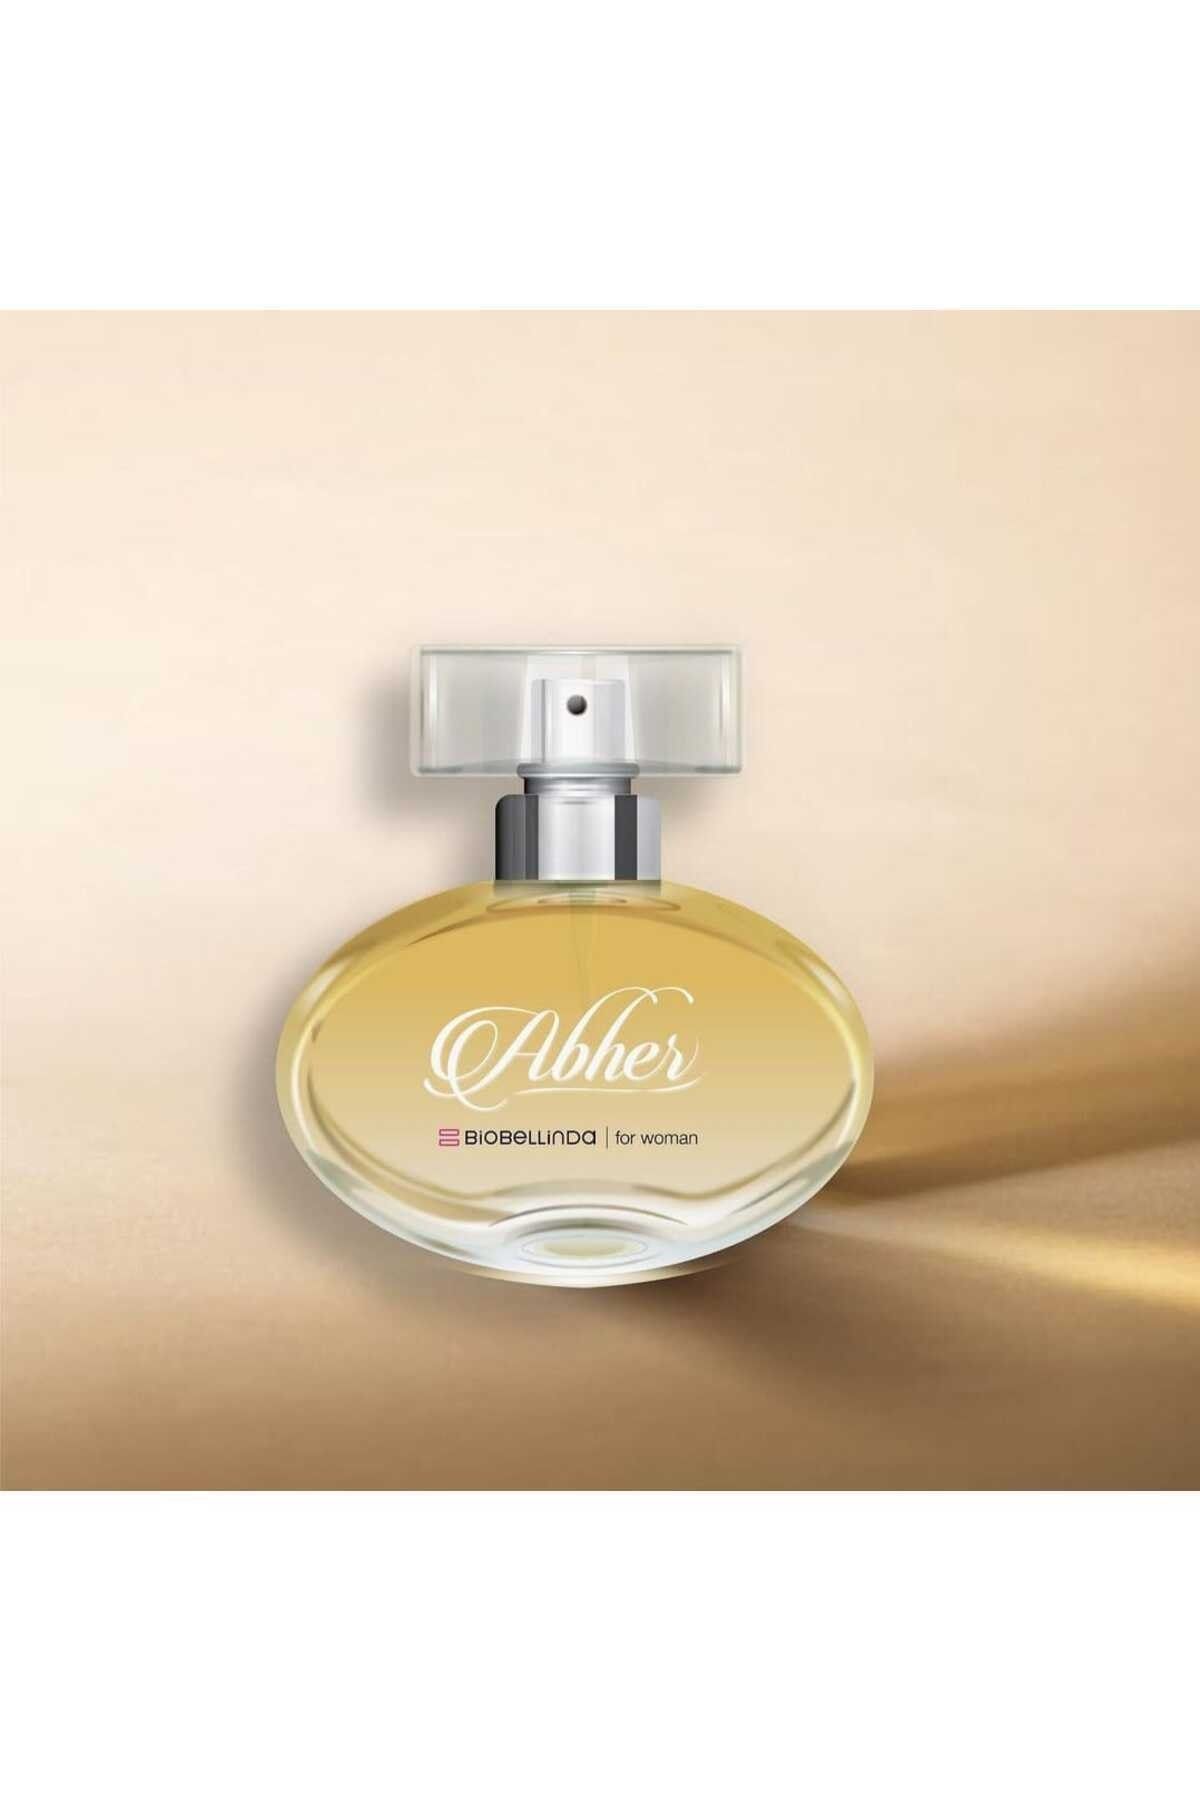 BioBellinda Abher Eau De Parfume For Women - Edp 50ml